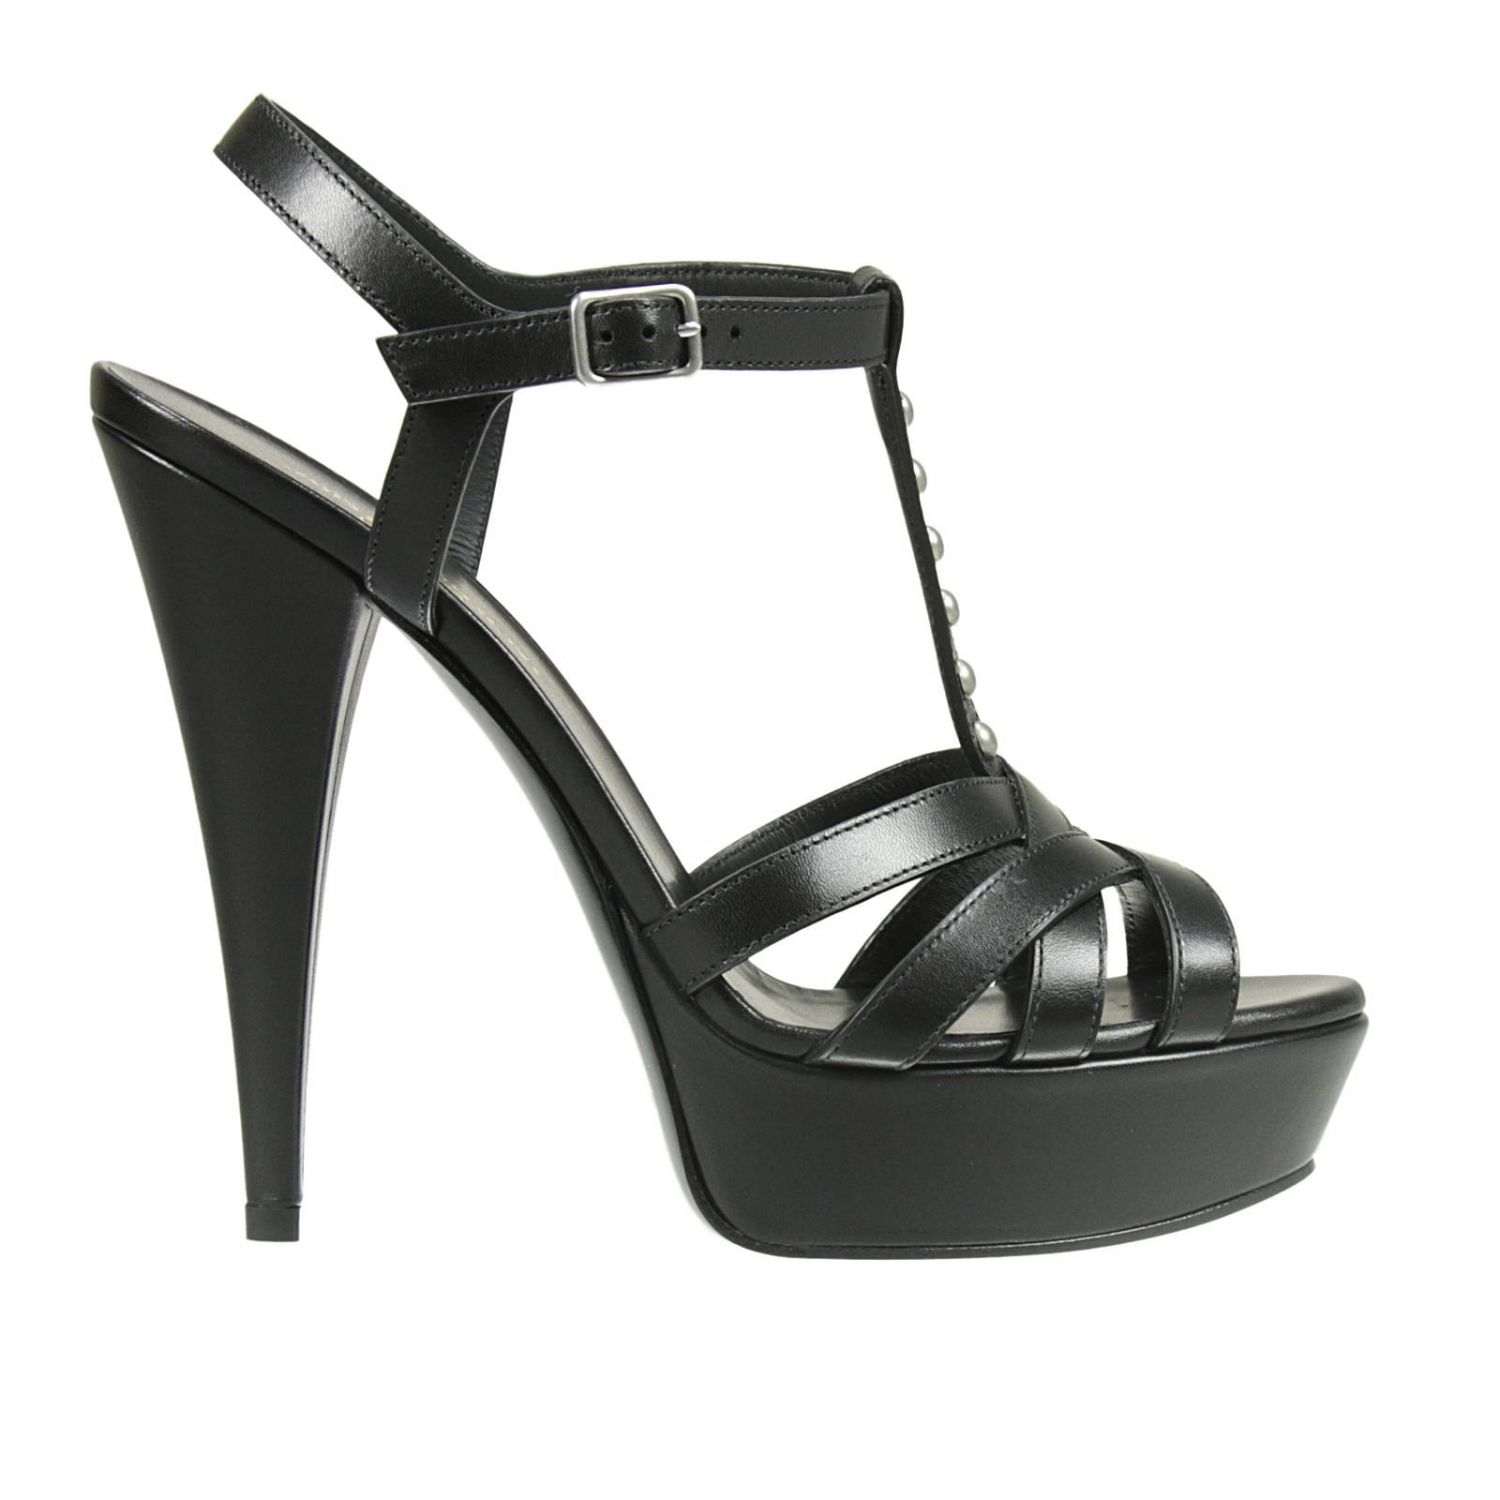 Saint Laurent Outlet: | High Heel Shoes Saint Laurent Women Black ...